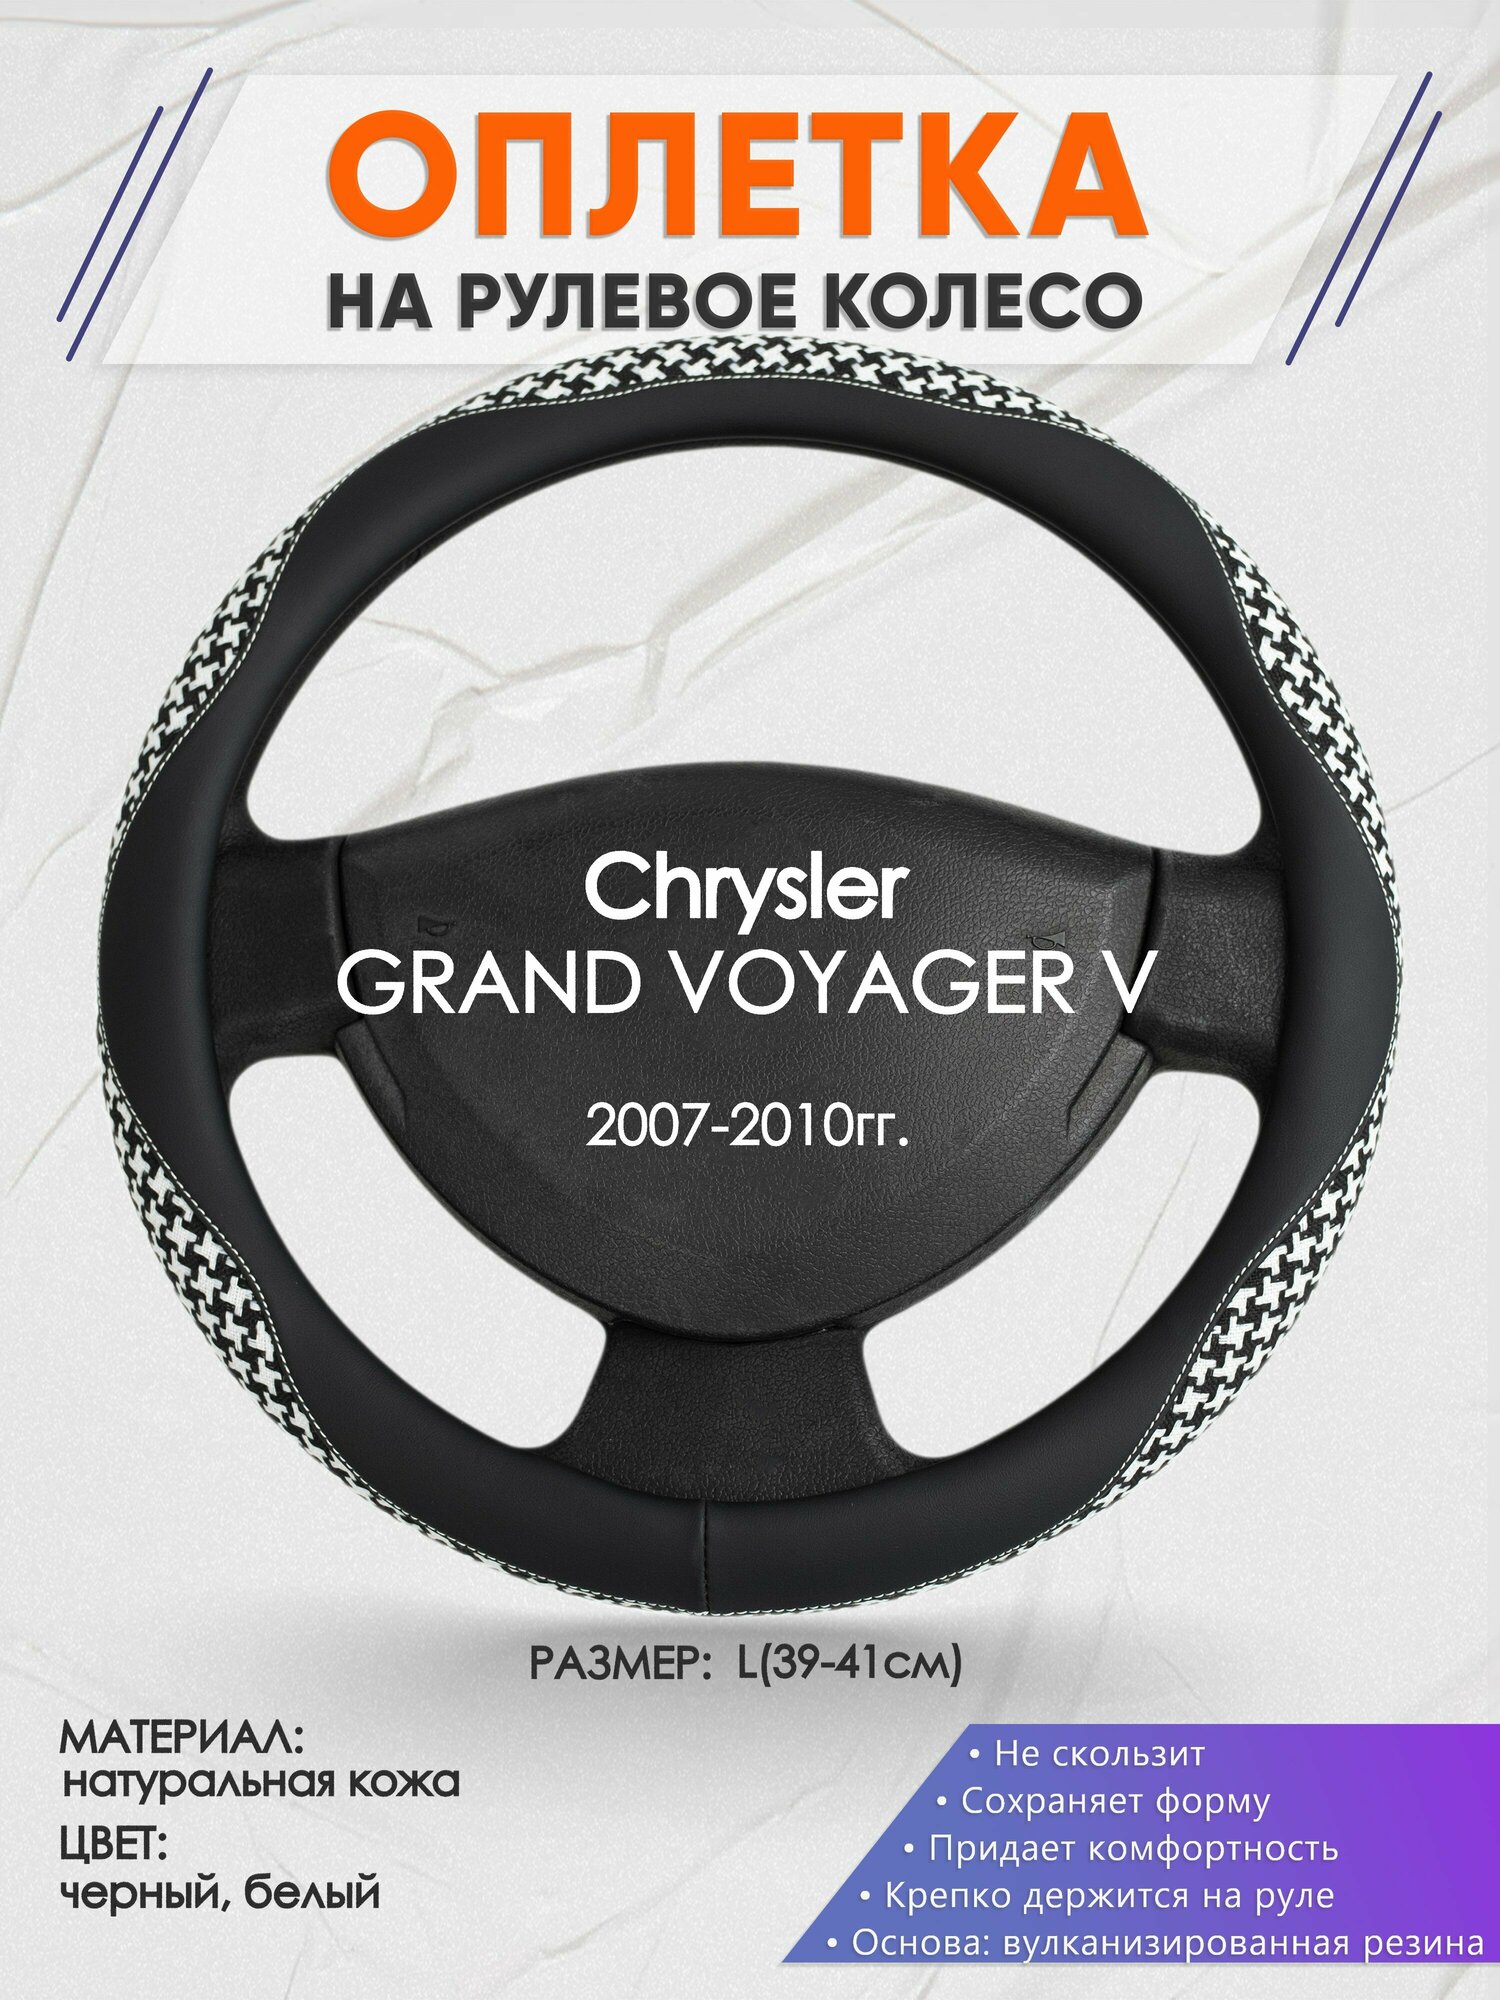 Оплетка на руль для Chrysler GRAND VOYAGER V(Крайслер Гранд Вояж) 2007-2010, L(39-41см), Натуральная кожа 21